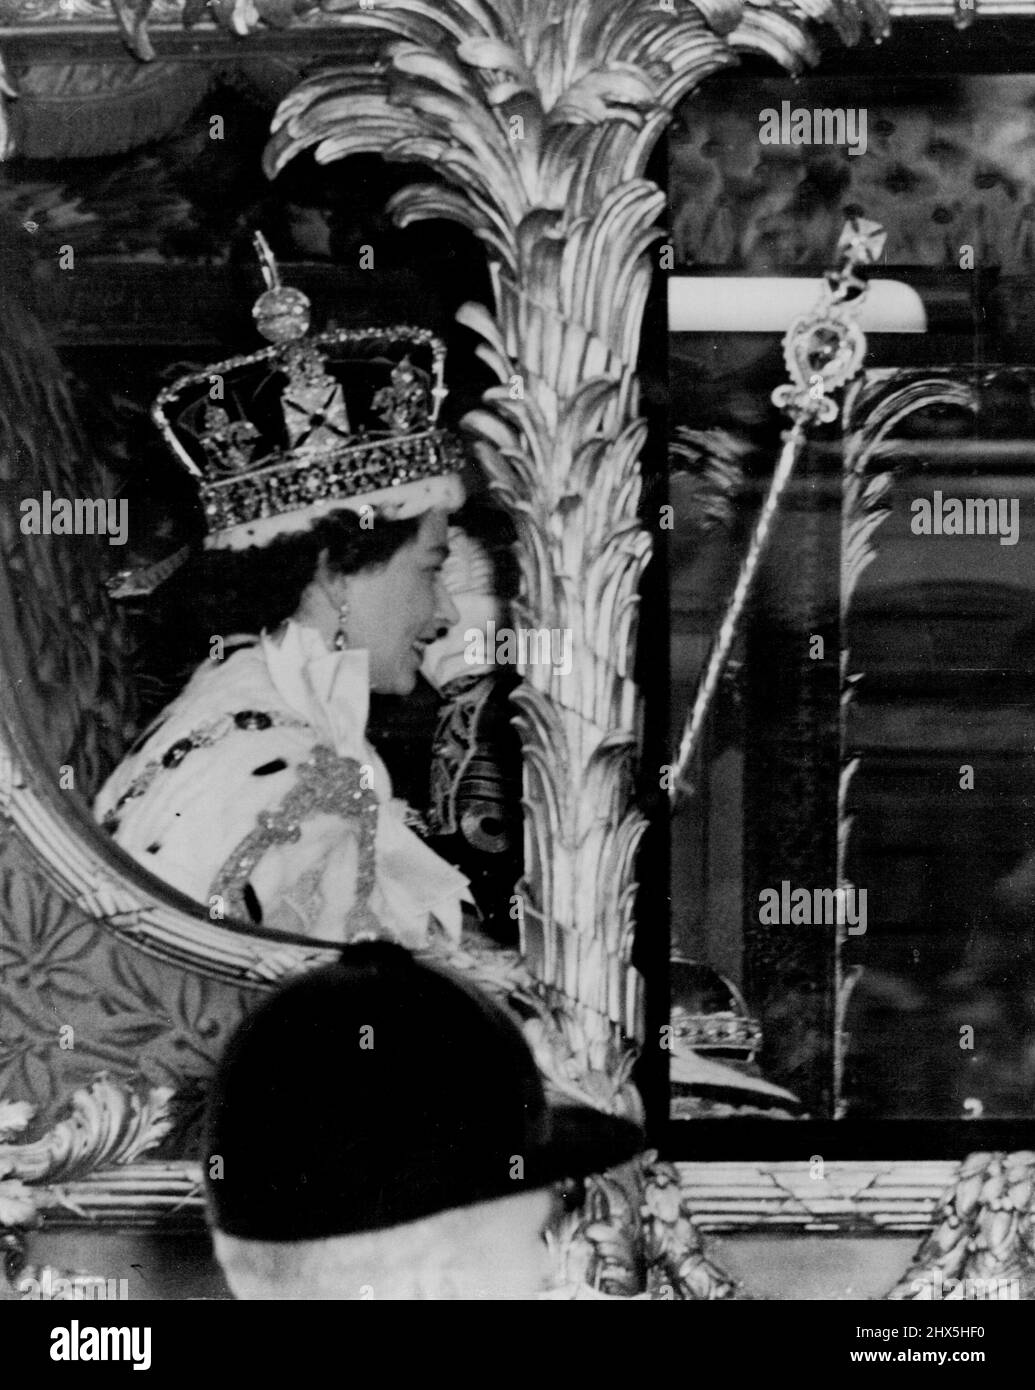 La Reina, coronada, Regresa en Triunfo al Palacio La Reina lleva la Corona Imperial del Estado en ella como ella reconoce los saludos de los muchos miles que embalaron la ruta Real después de su coronación en la abadía de Westminster. El entrenador de oro en el que viajaba la estaba devolviendo al Palacio de Buckingham. La foto fue tomada en Whitehall. 02 de junio de 1953. Foto de stock